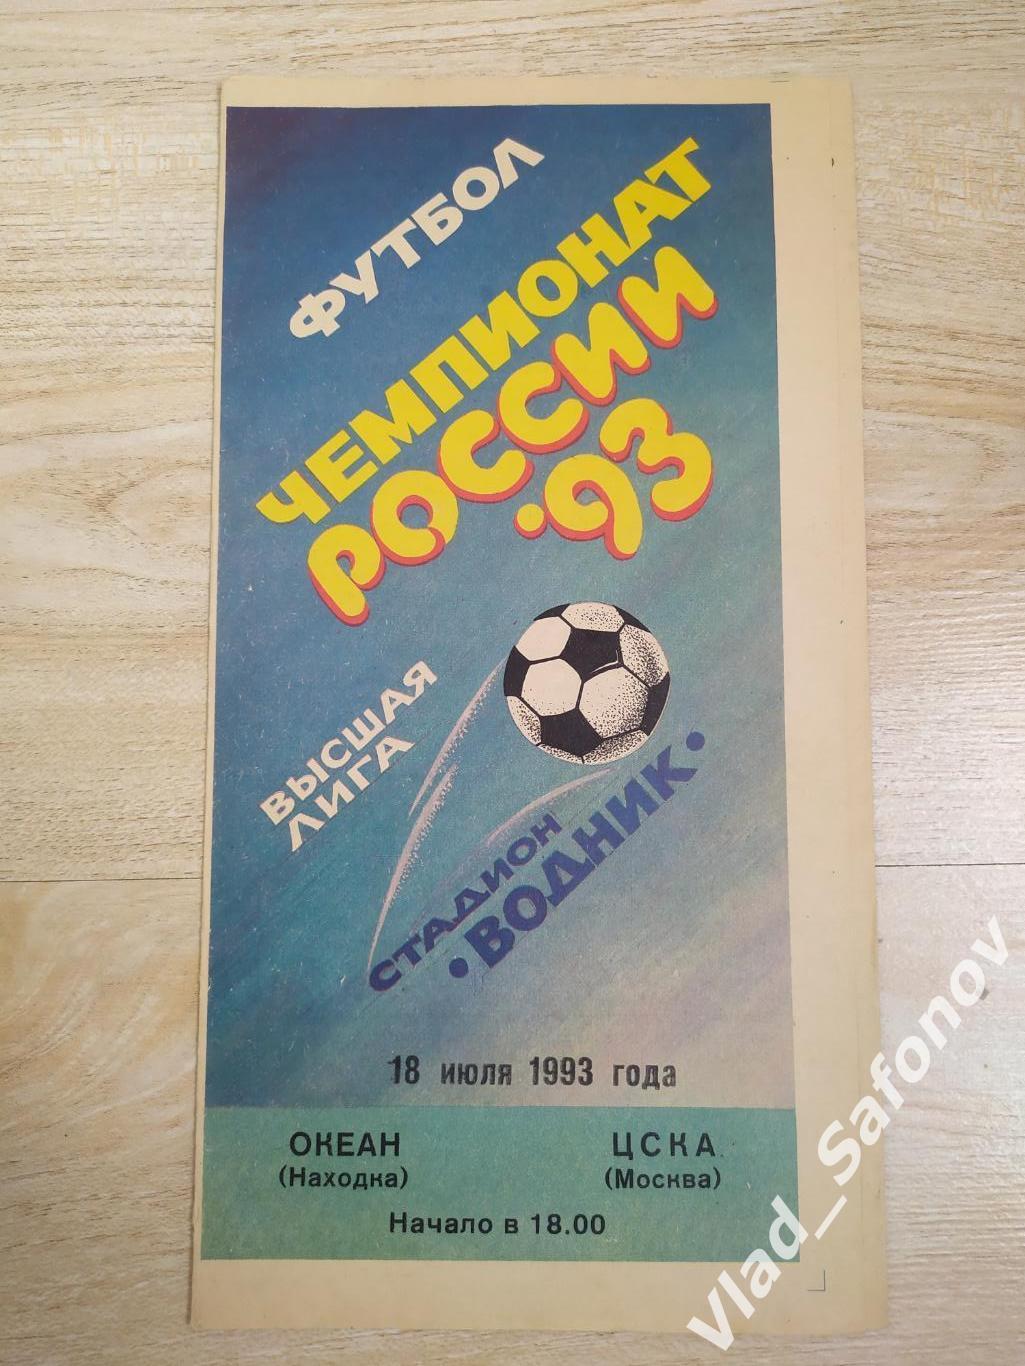 Океан(Находка) - ЦСКА(Москва). Высшая лига. 18/07/1993